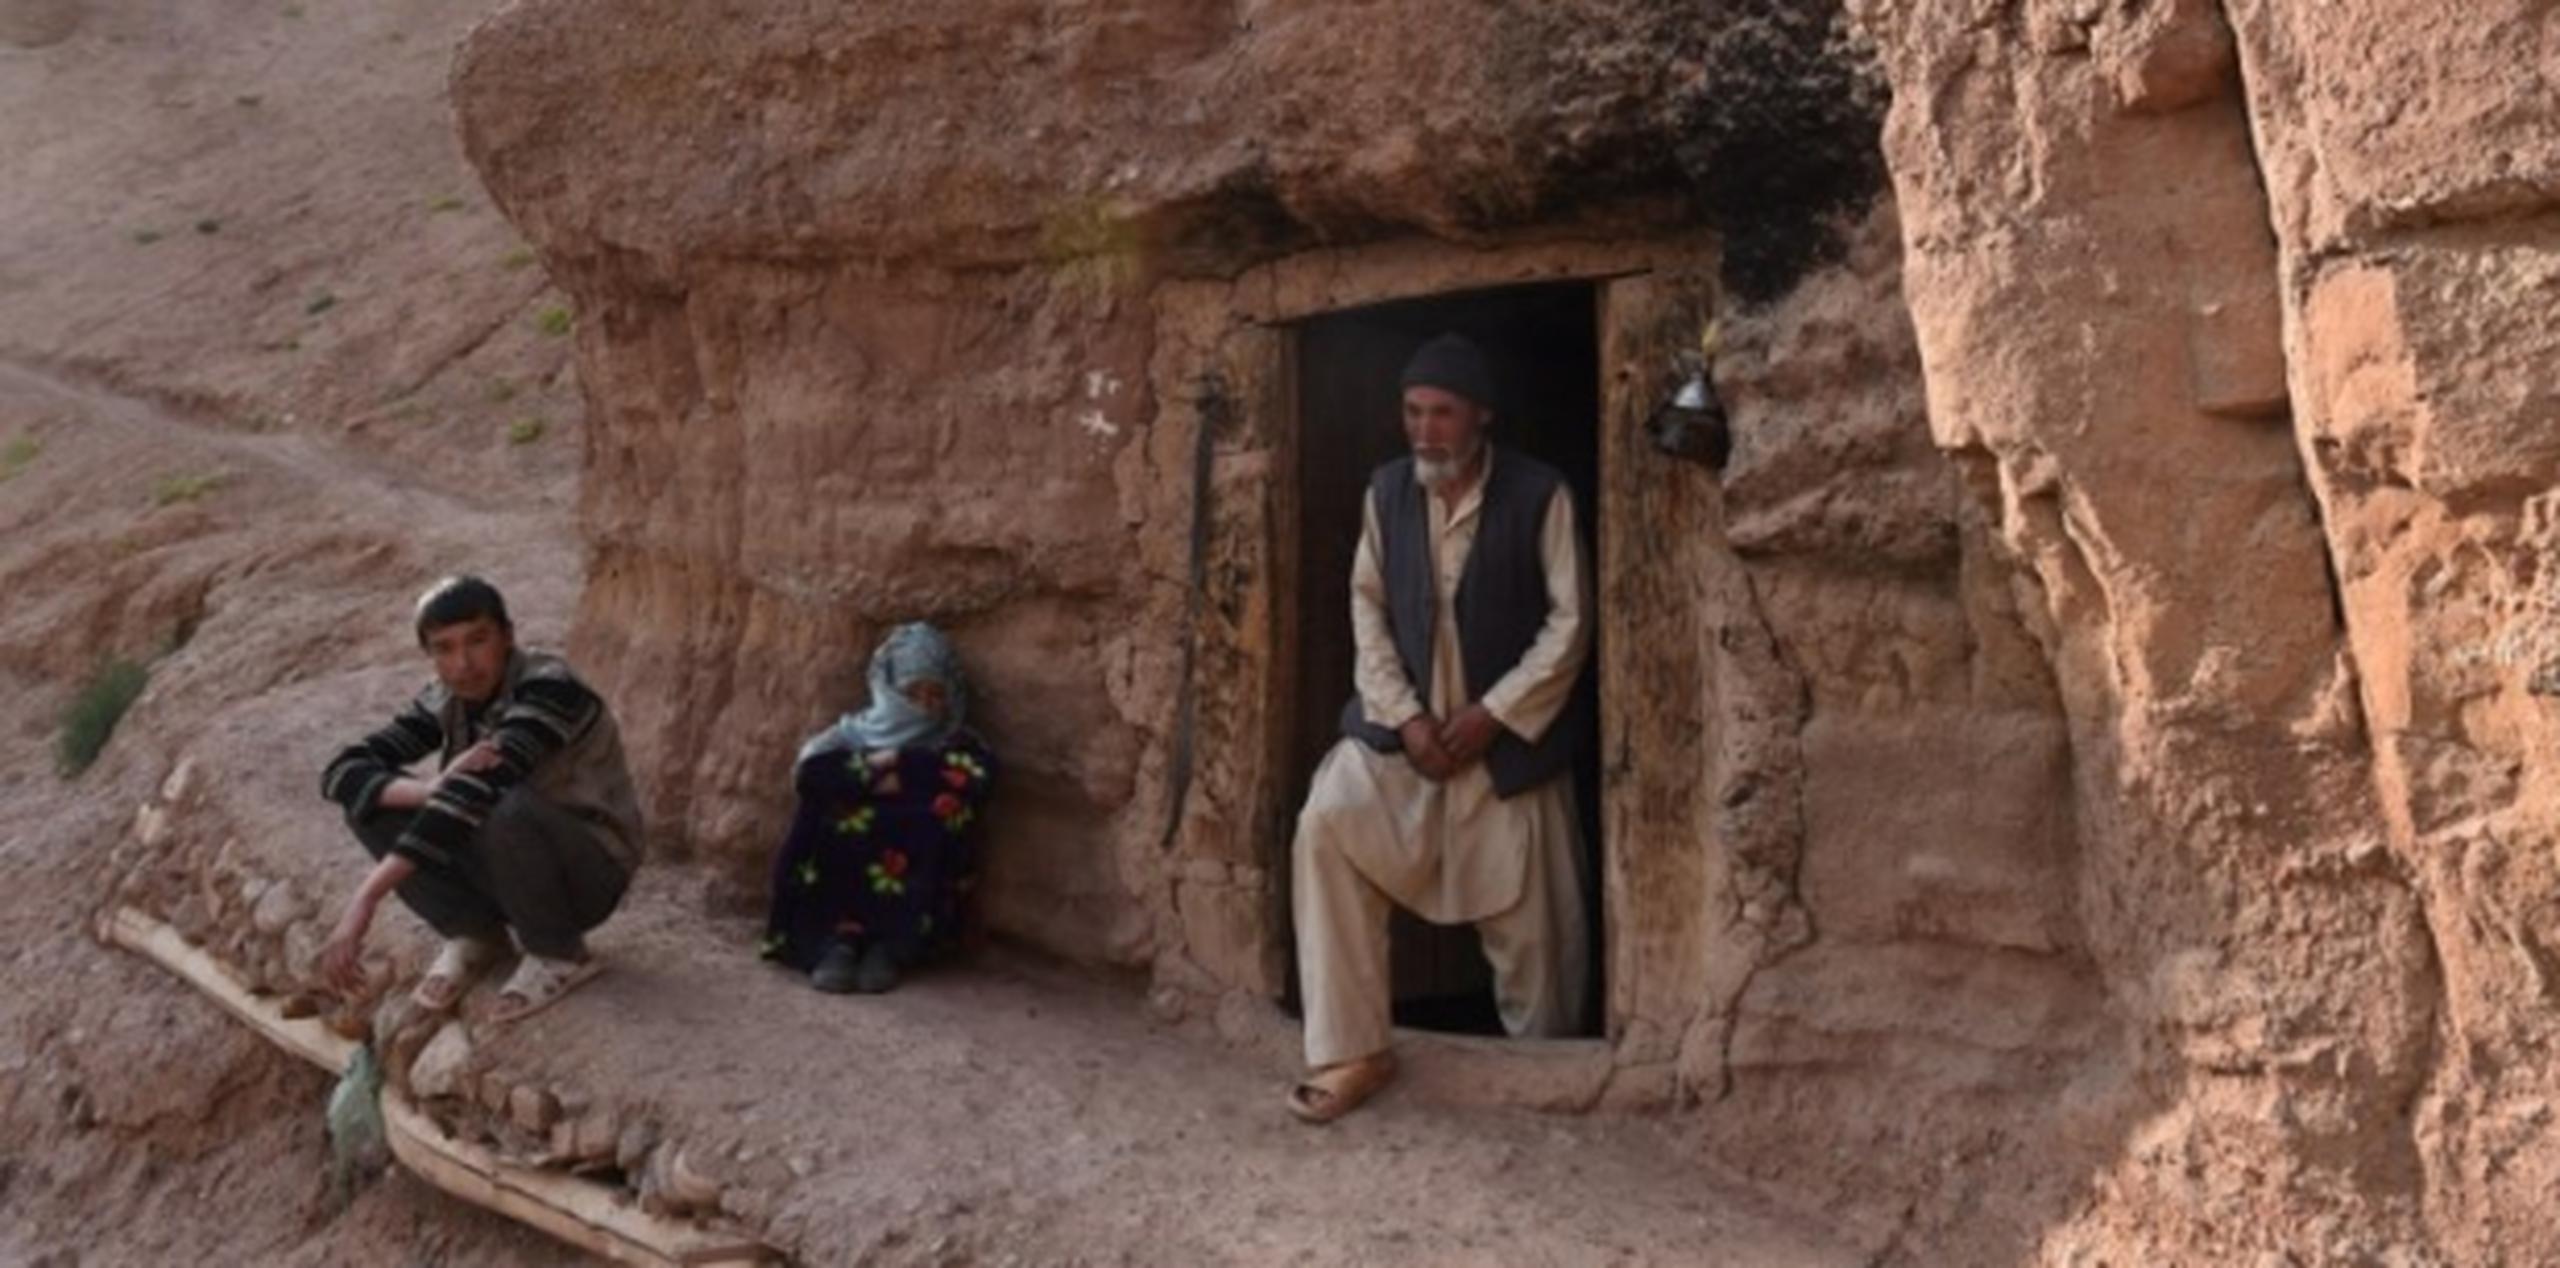 El talibán destruyó lugares históricos de Afganistán, que hoy día han sido convertidos en cuevas donde residen empobrecidos ciudadanos de ese país. (AFP)